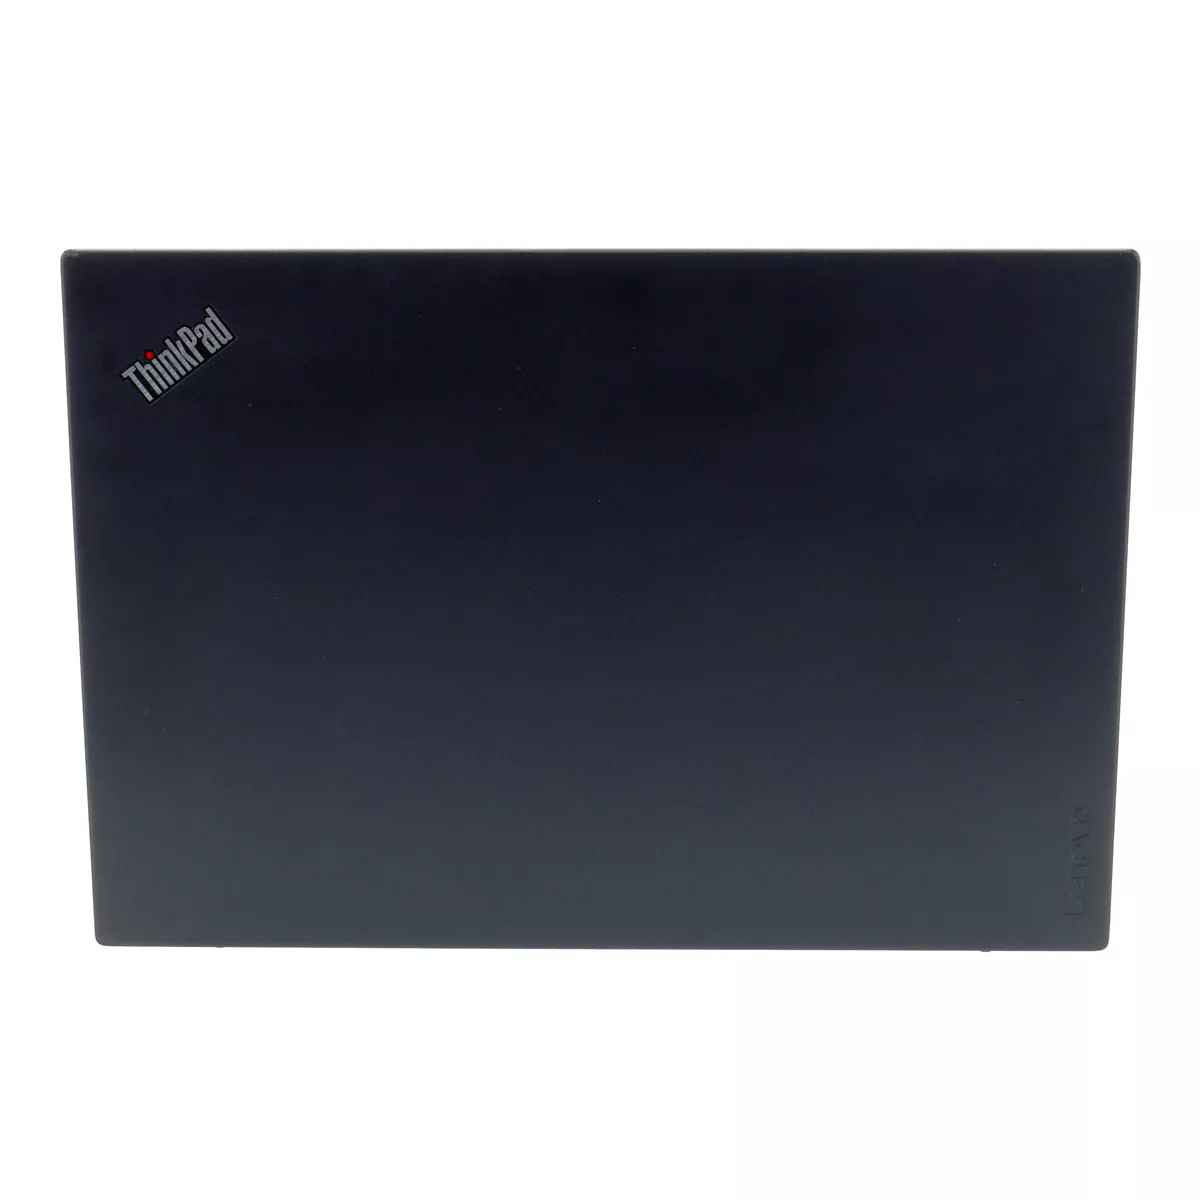 Lenovo ThinkPad T580 Core i5 8250U Full-HD 240 GB M.2 nVME SSD Webcam B